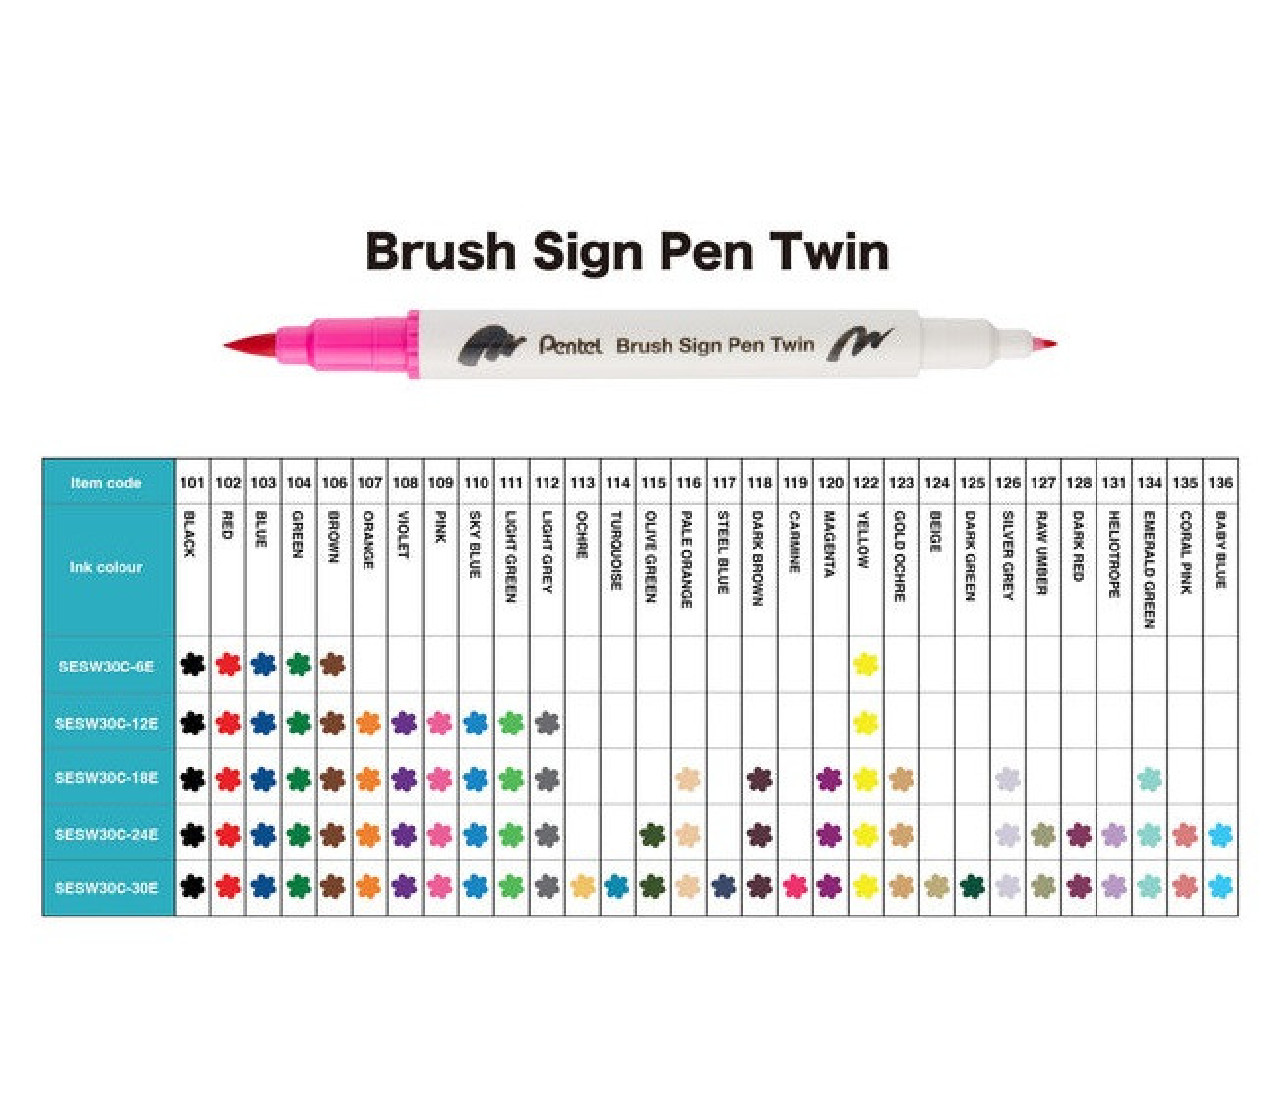 Pentel Brush Sign Pen Twin T106 Brown